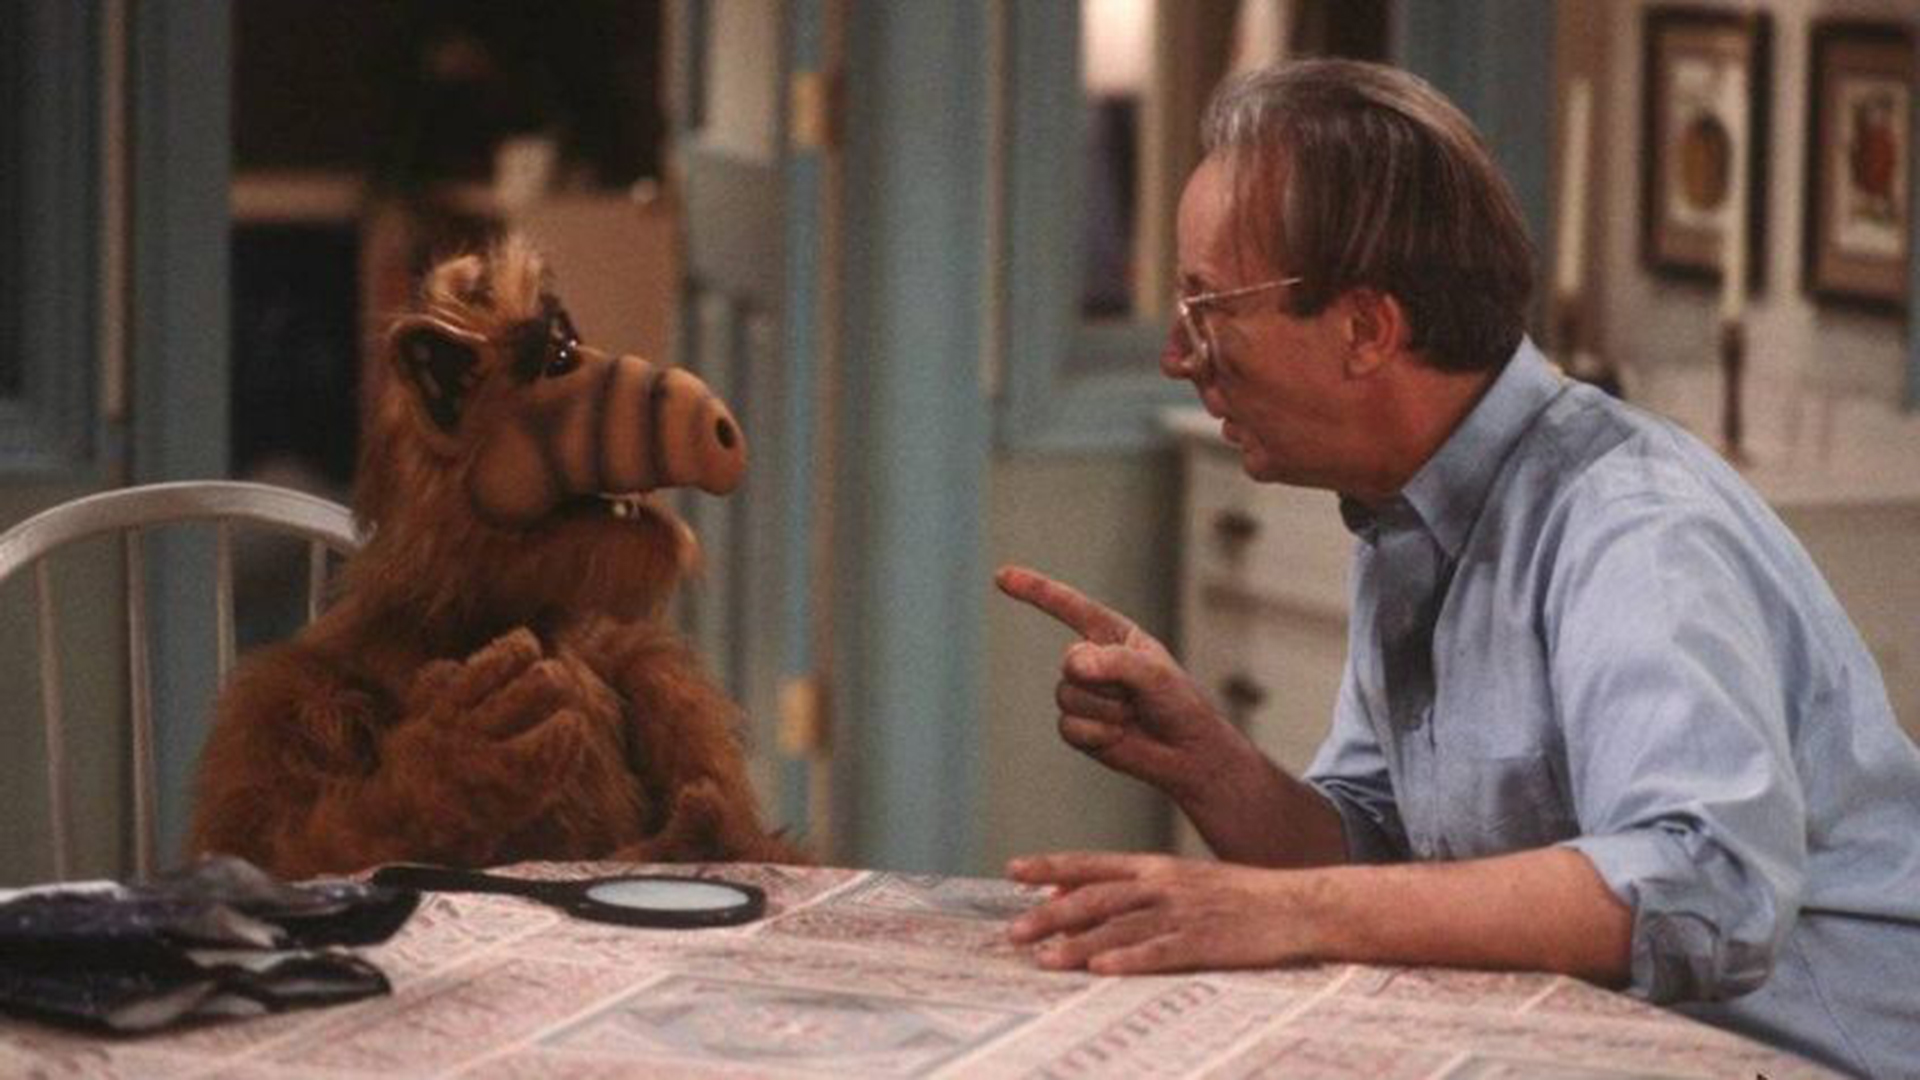 Un alienígena se accidenta y termina en una curiosa casa familiar. Así empieza la historia de "Alf". (NBC)